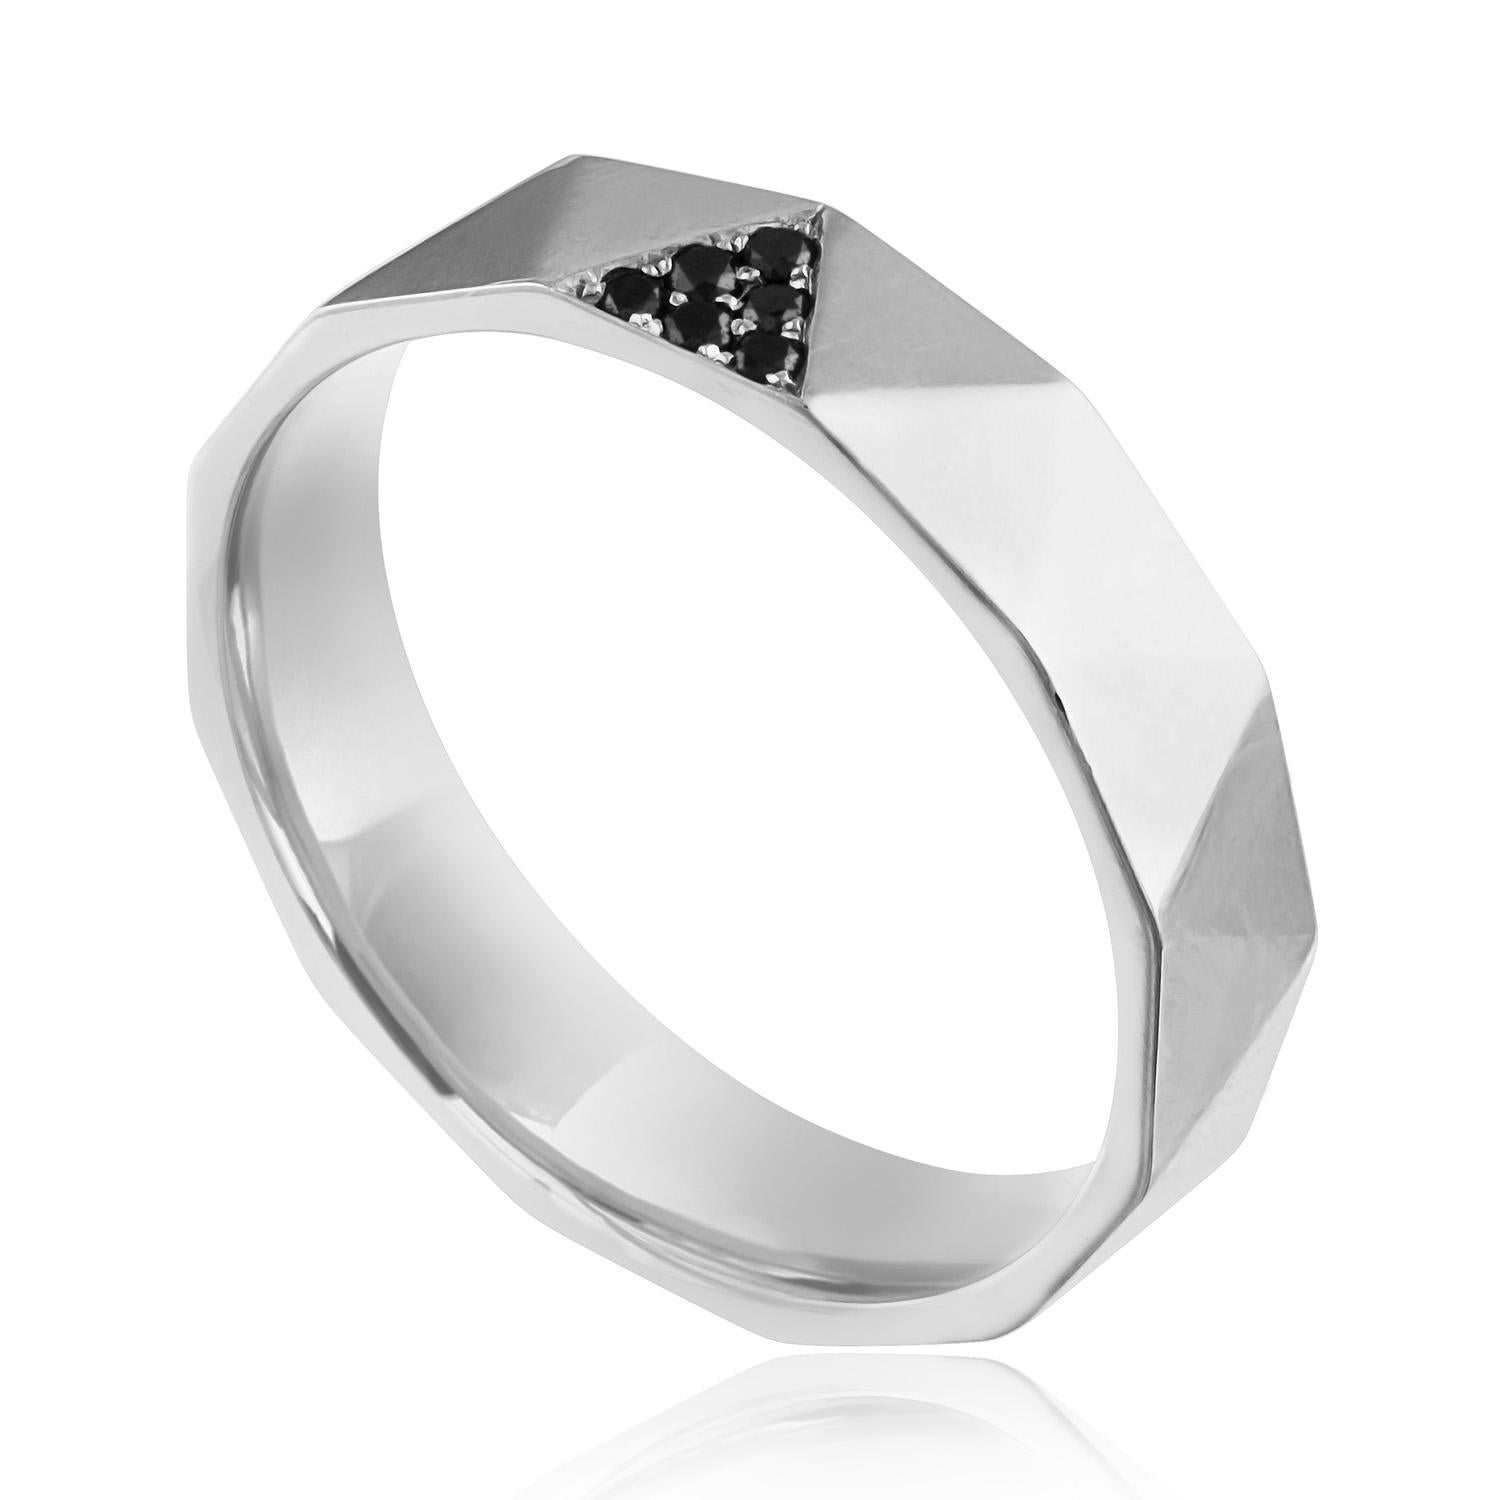 Anneau de mariage à diamant pour homme
La bague est en or blanc 14K
Les diamants noirs taillés en rond pèsent 0,10 carats.
La bague est de taille 10.5, PAS de taille.
La bague pèse 3,4 grammes